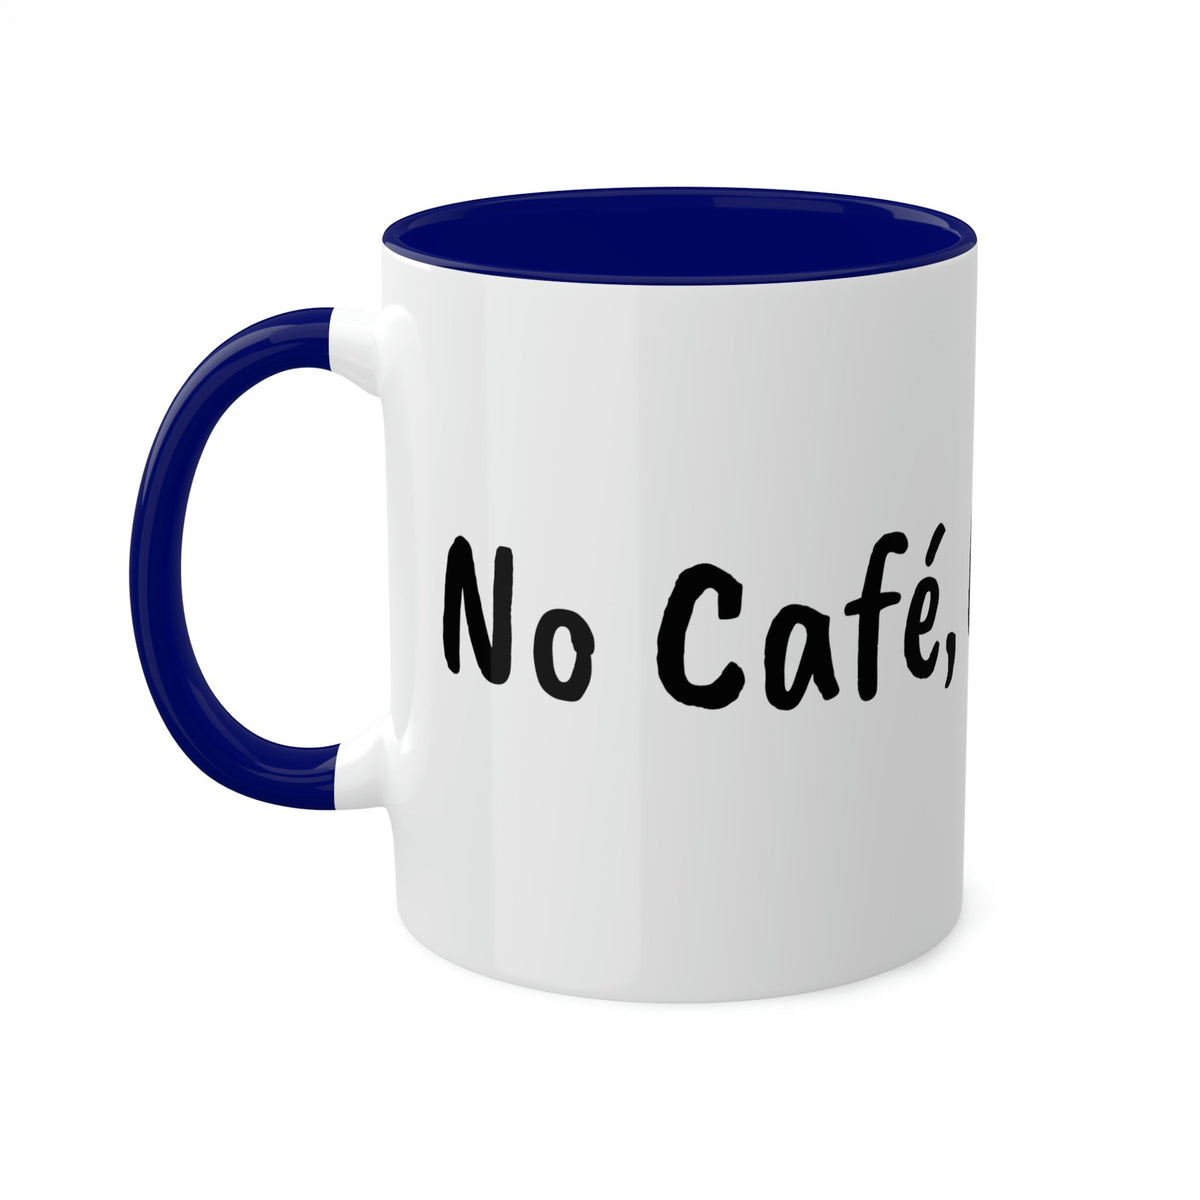 No Café, No Trabajo Mug